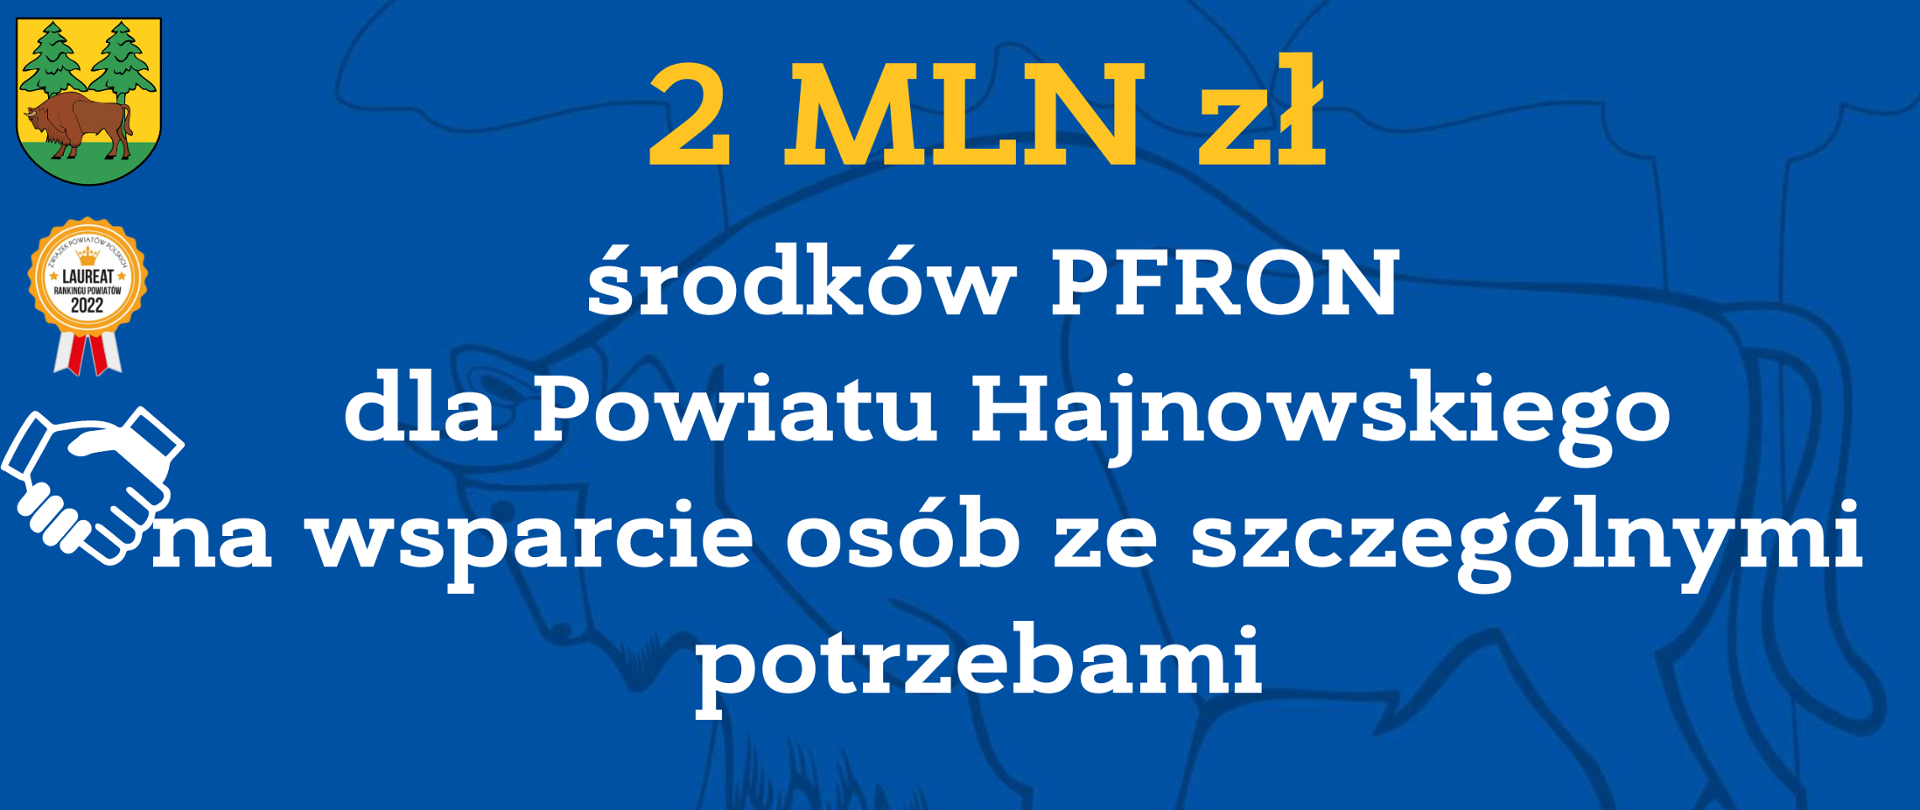 2 MLN zł środków PFRON dla Powiatu Hajnowskiego na wsparcie osób ze szczególnymi potrzebami